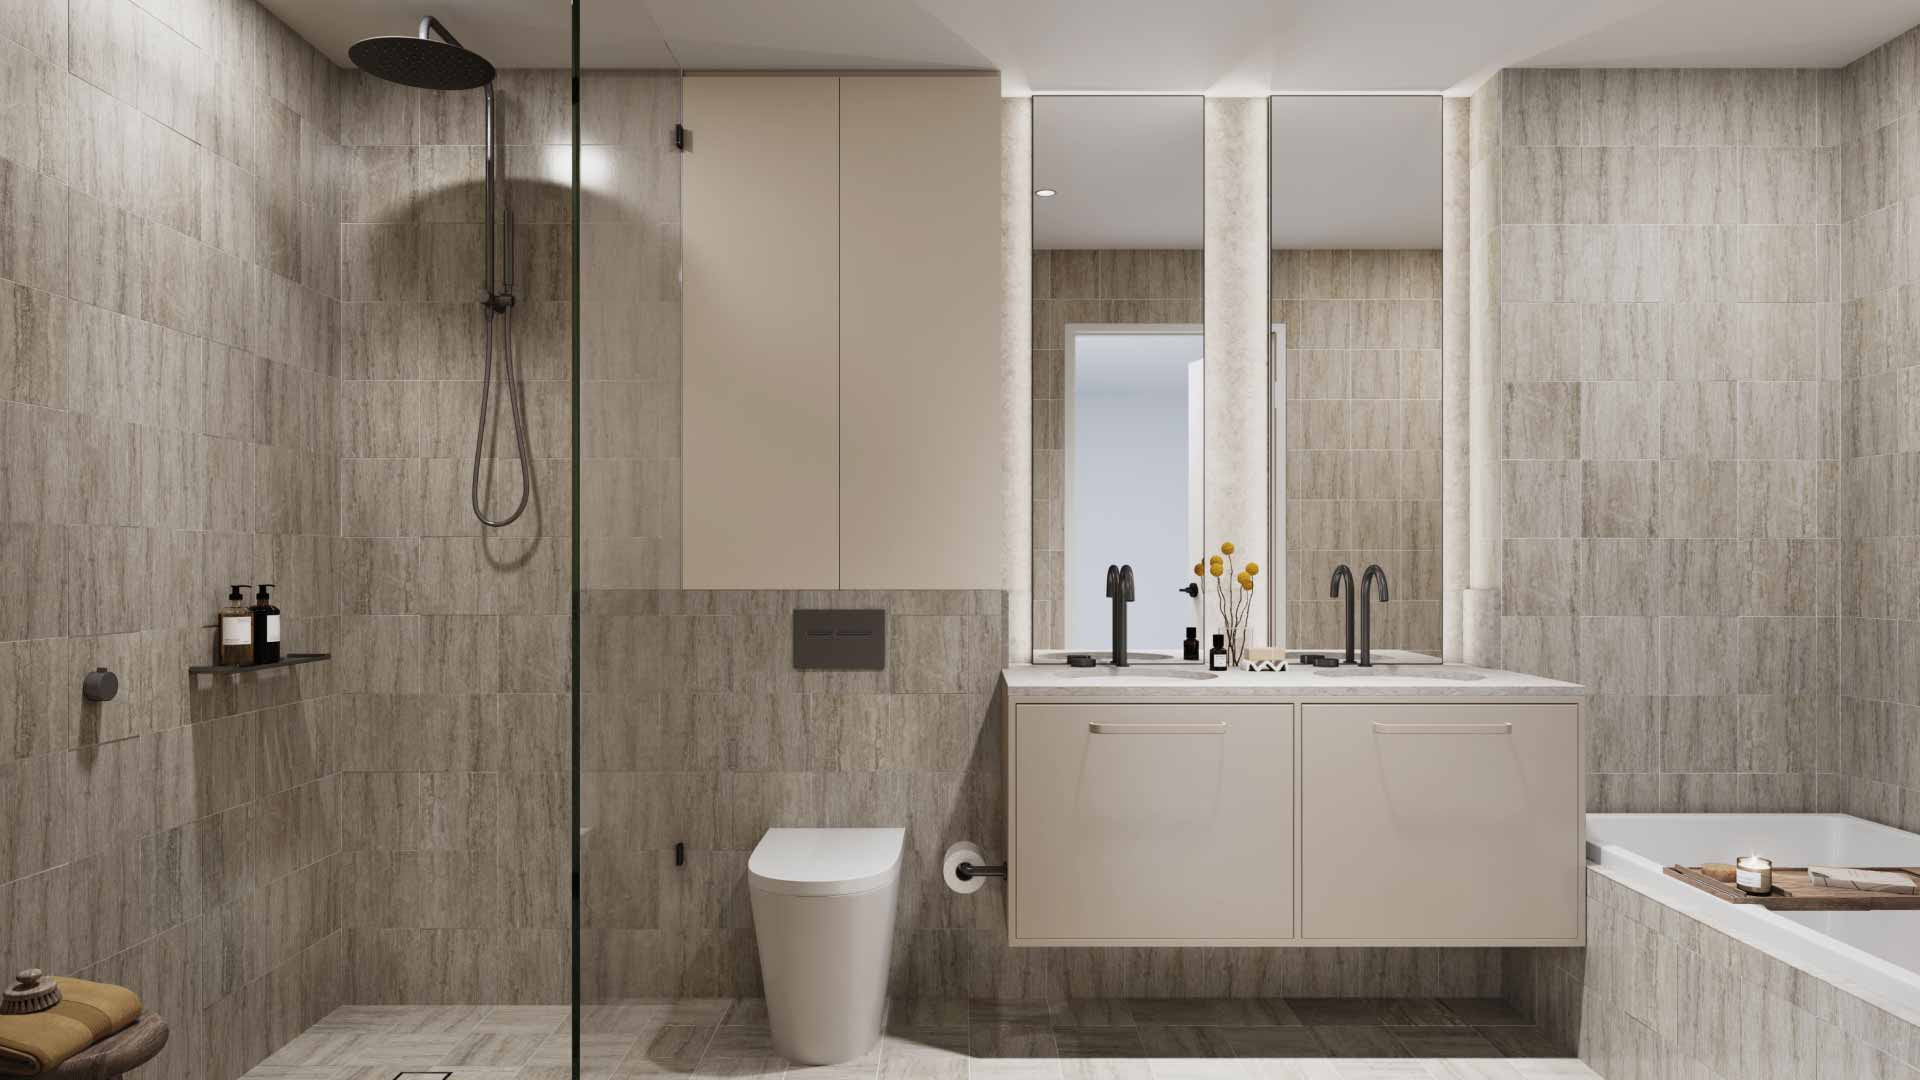 Luxury Upgraded Sand Bathroom - The Kensington